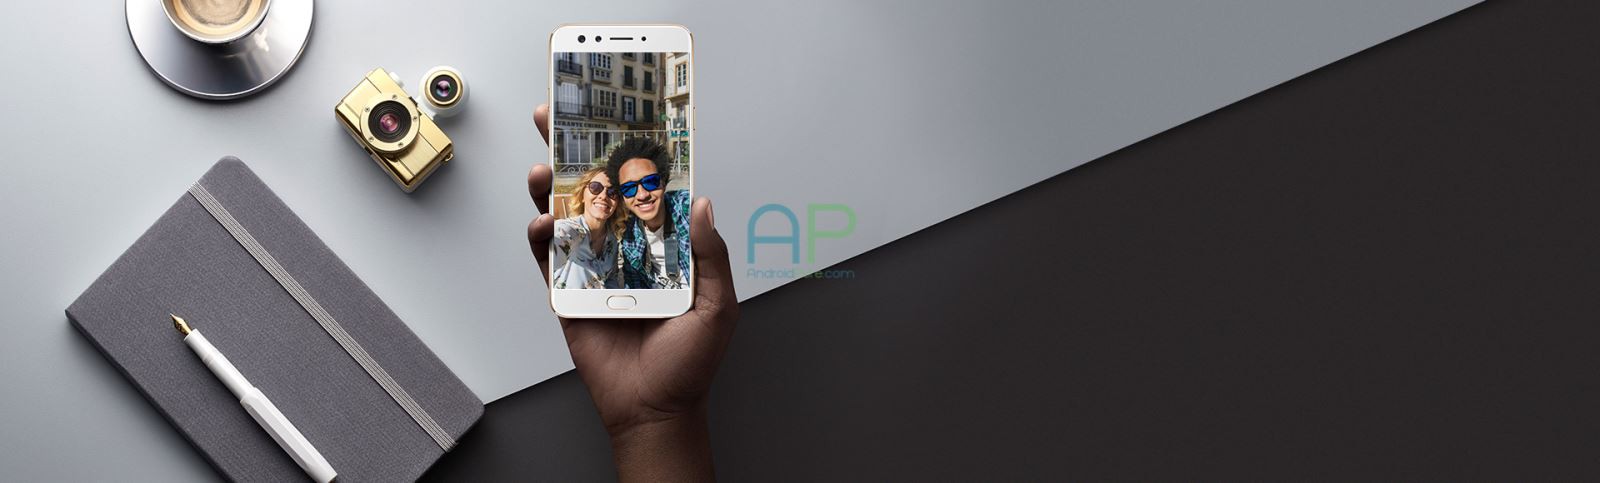 OPPO F3 camera selfie kép tiếp tục xuất hiện cực đẹp trước ngày ra mắt